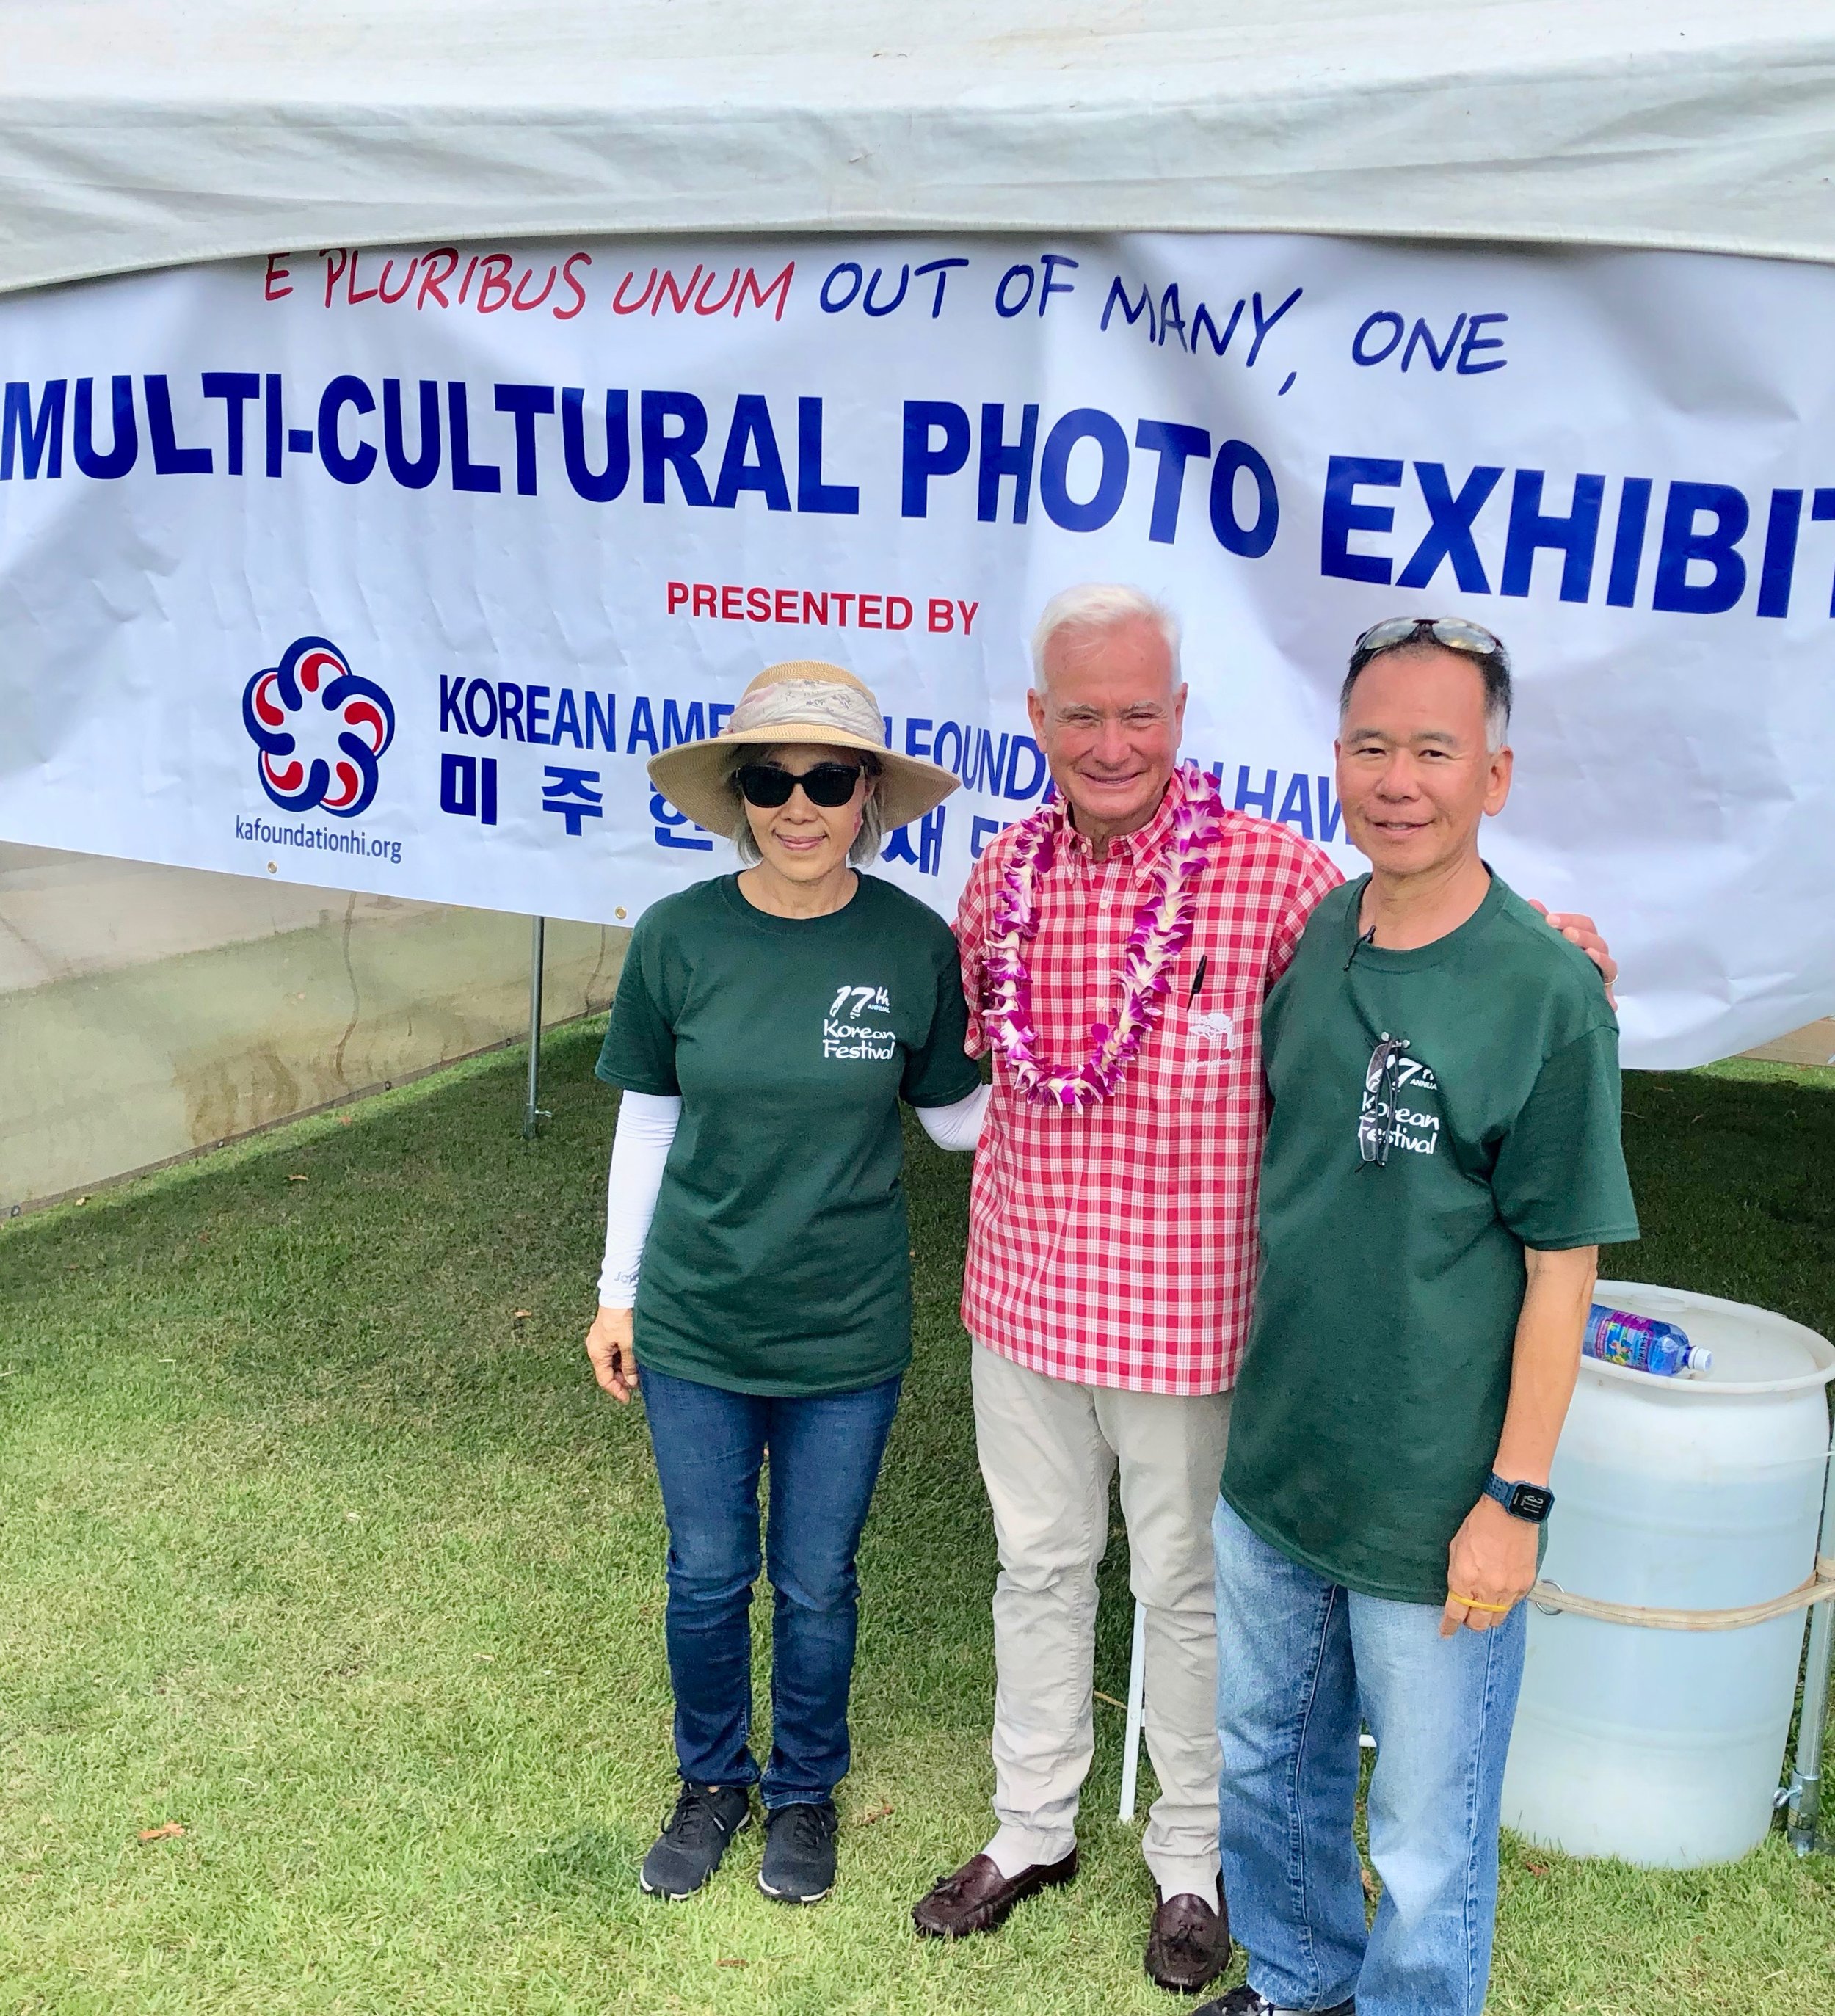 Multi-cultural Photo Exhibit 2019